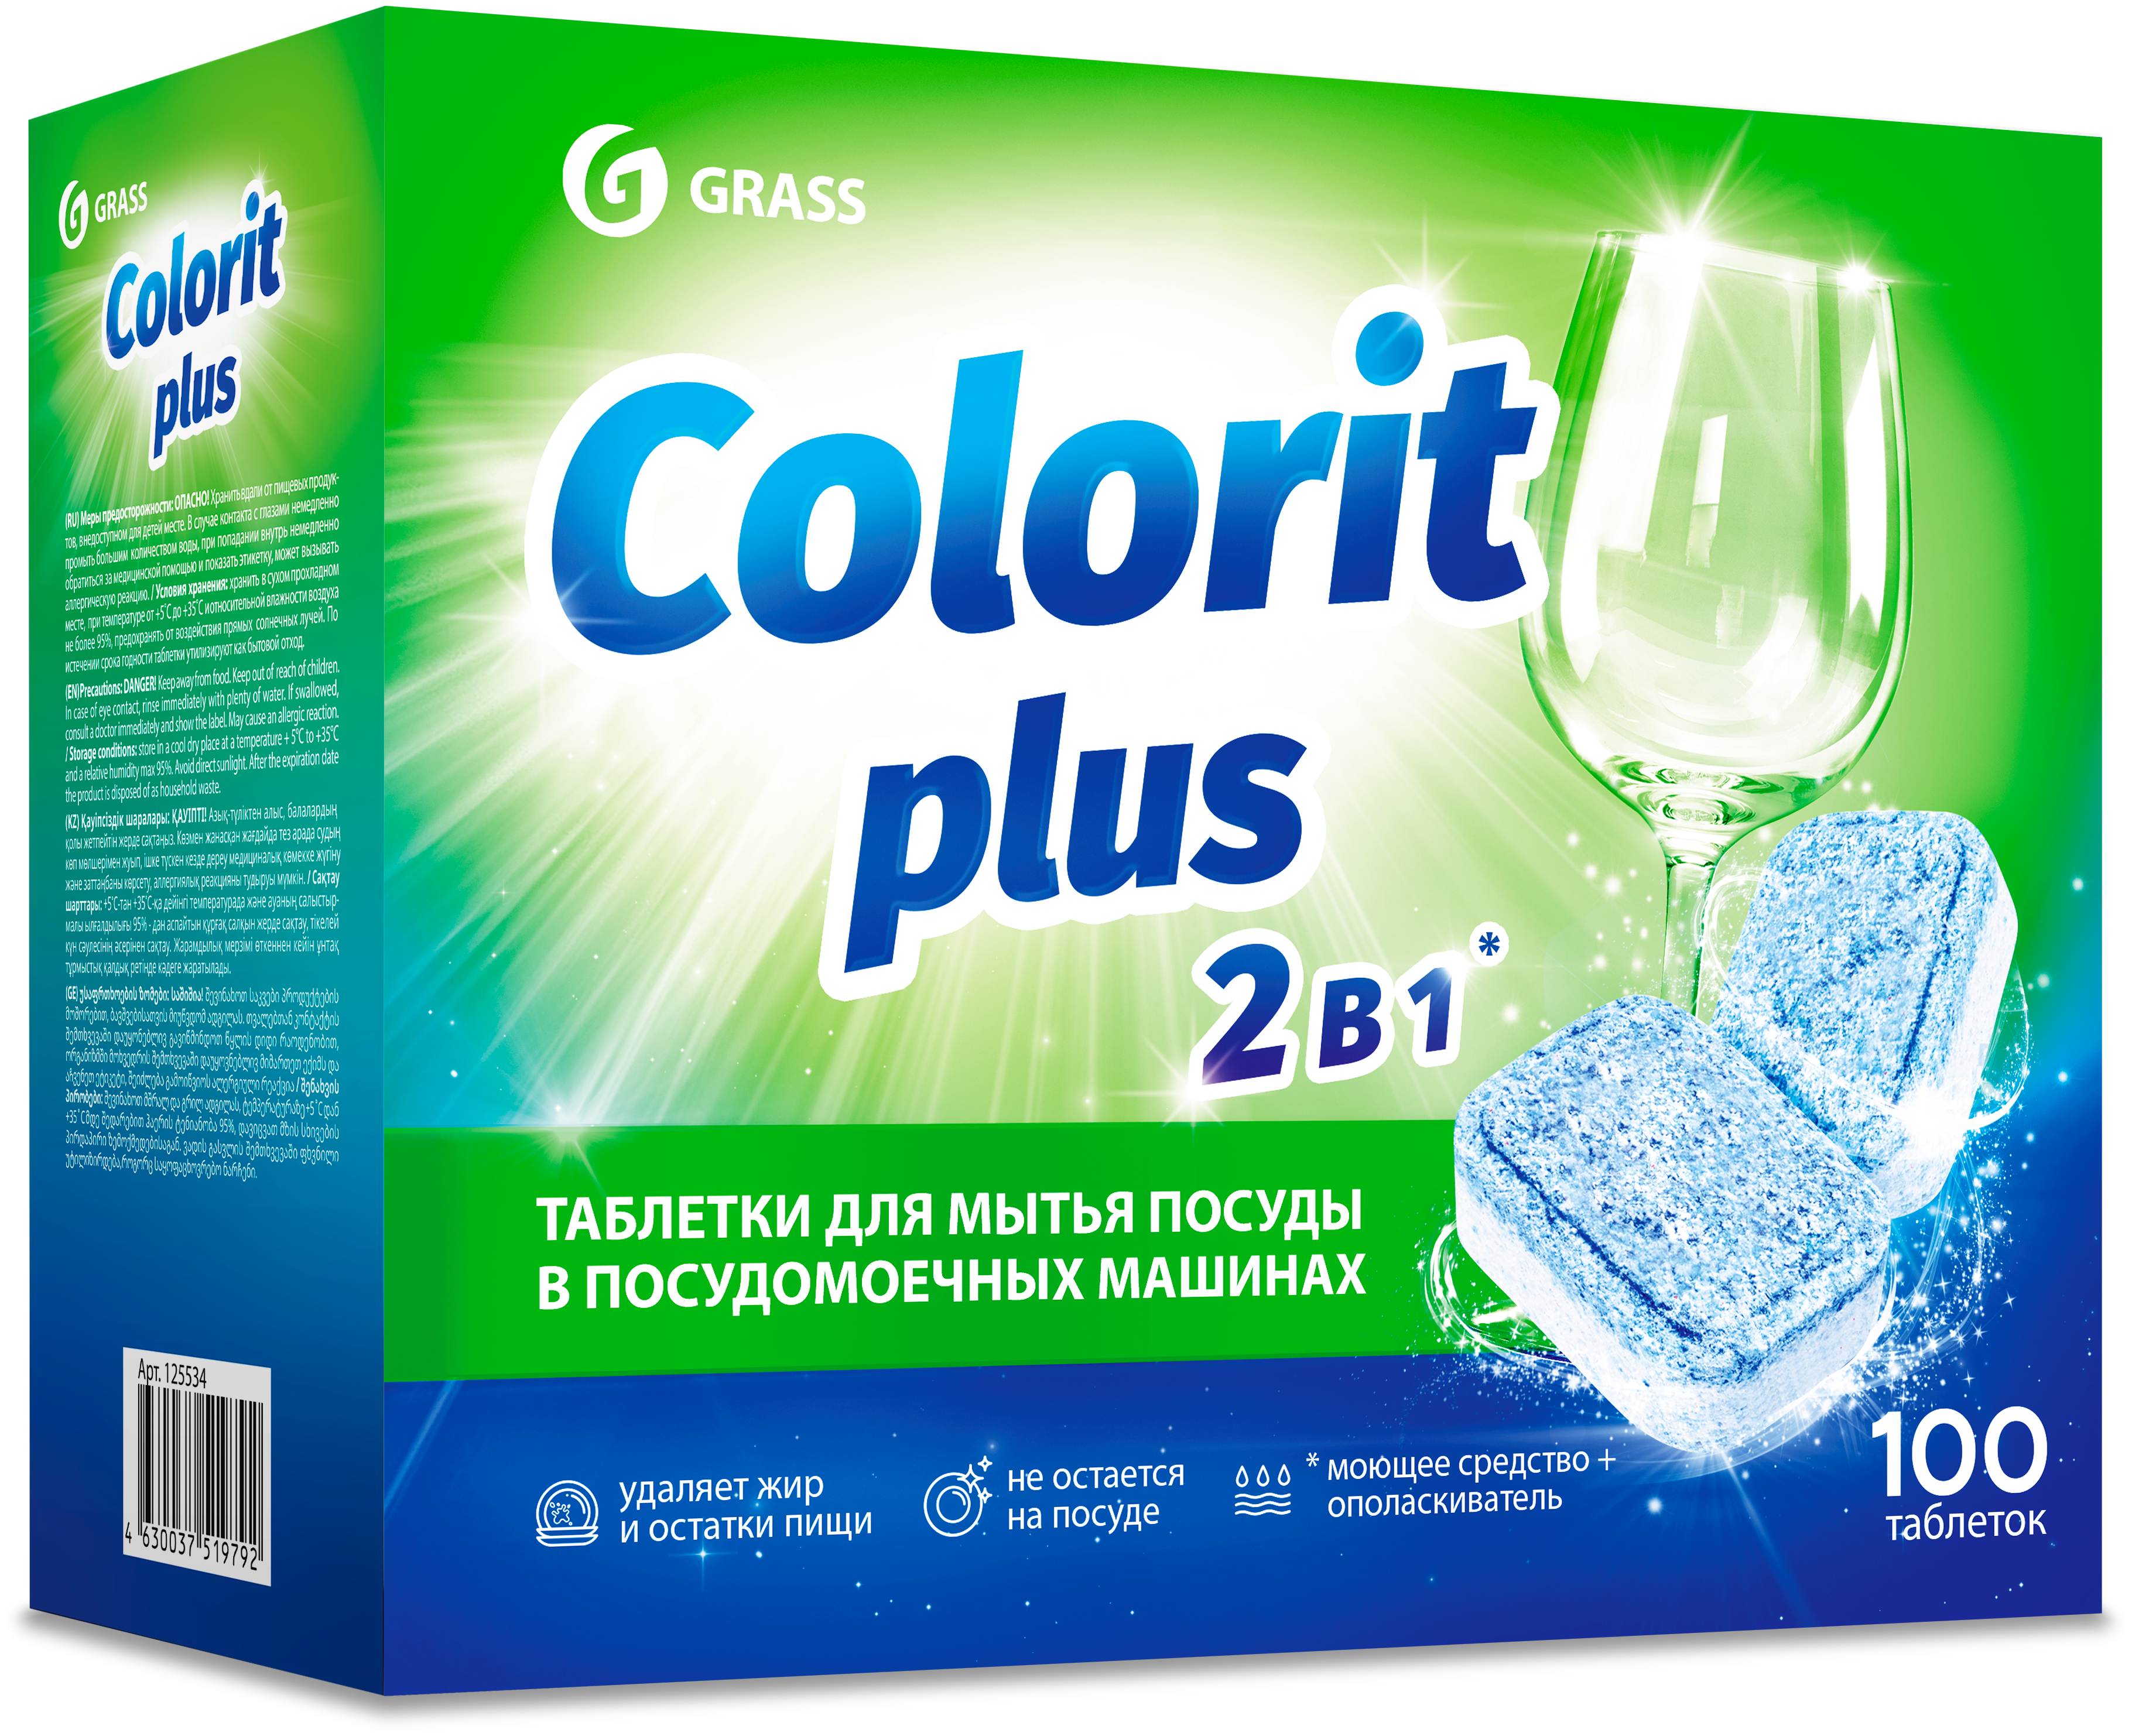 Grass Таблетки для посудомоечных машин Colorit Plus 20г -100шт